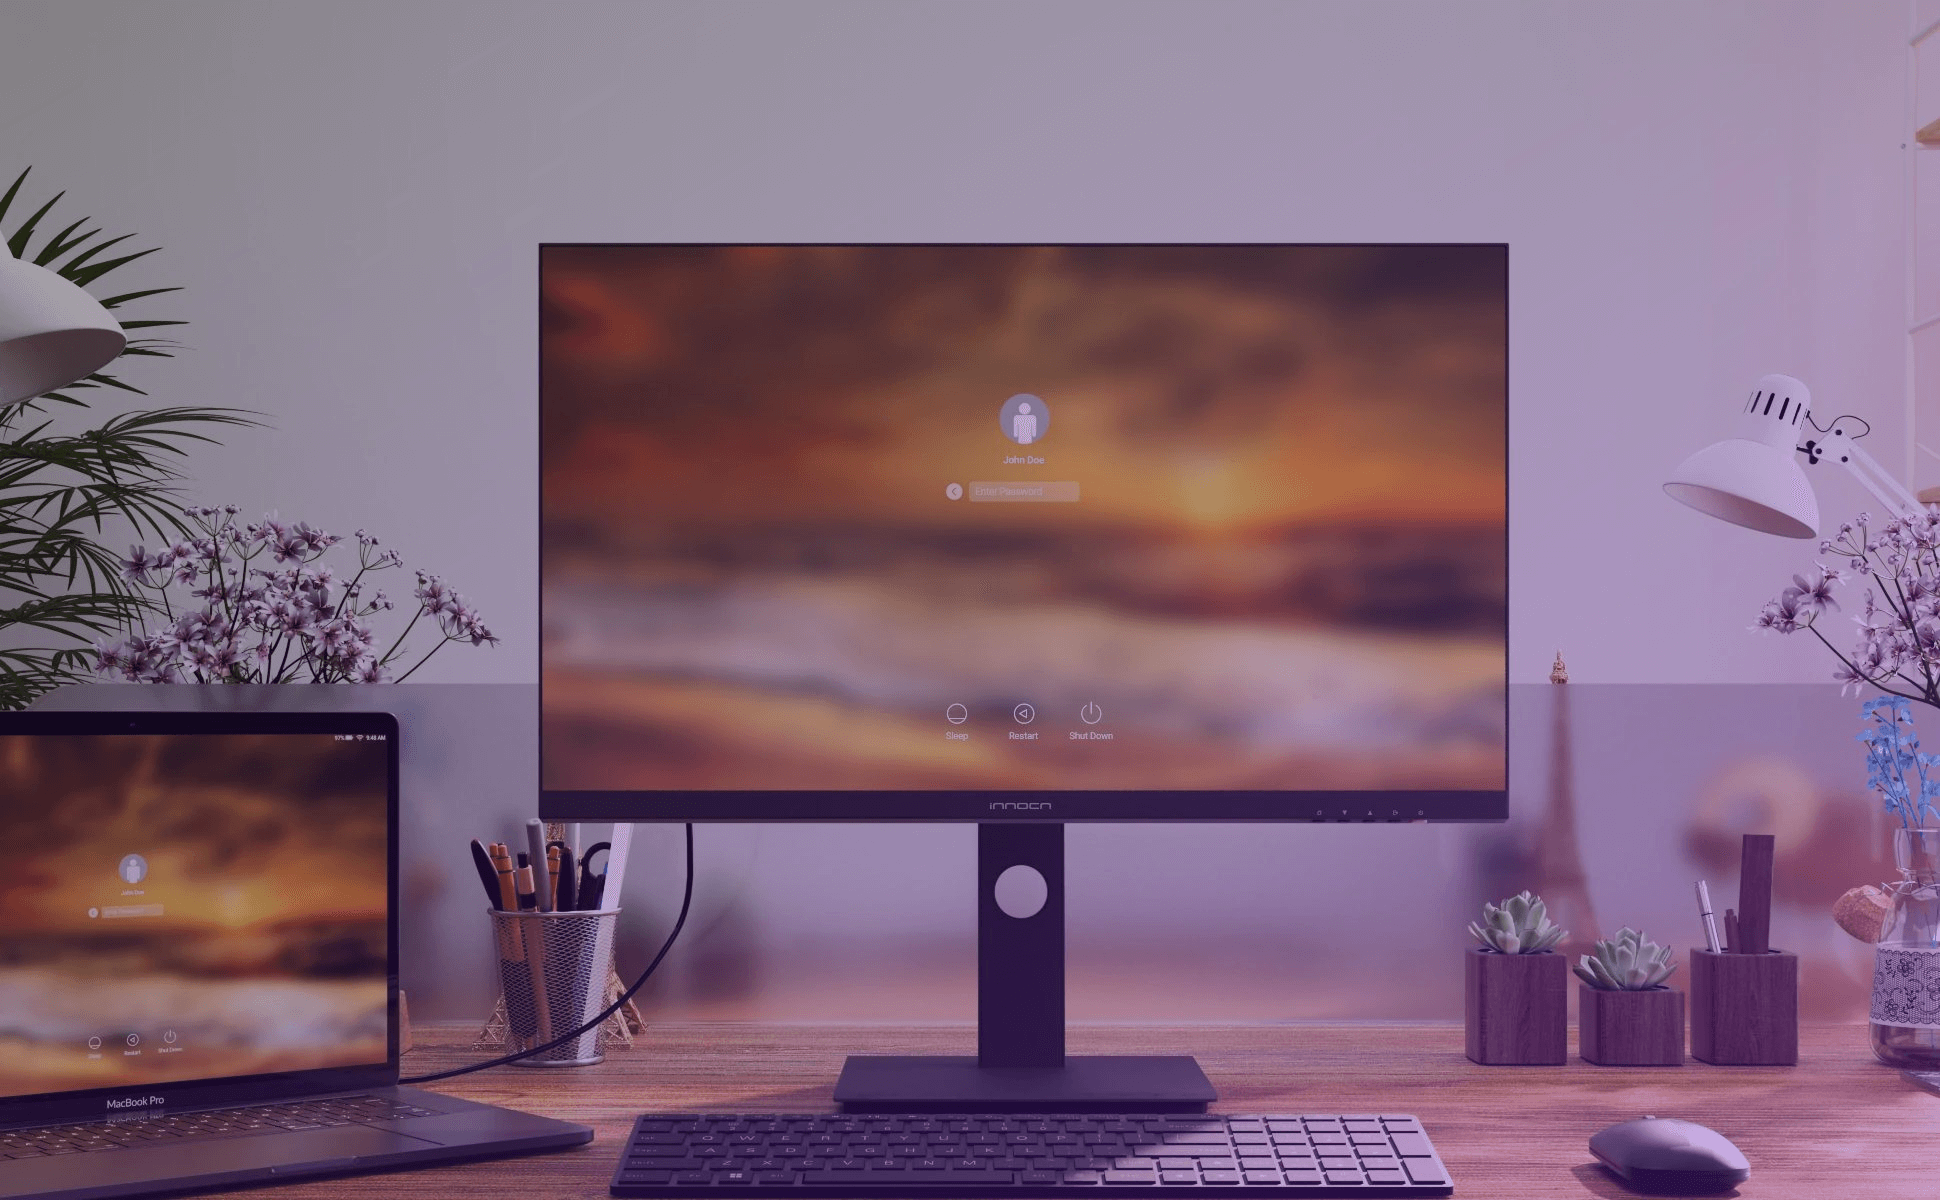 Toca fondo en PcComponentes este monitor 4K perfecto para los que buscan  uno para su Mac mini o MacBook